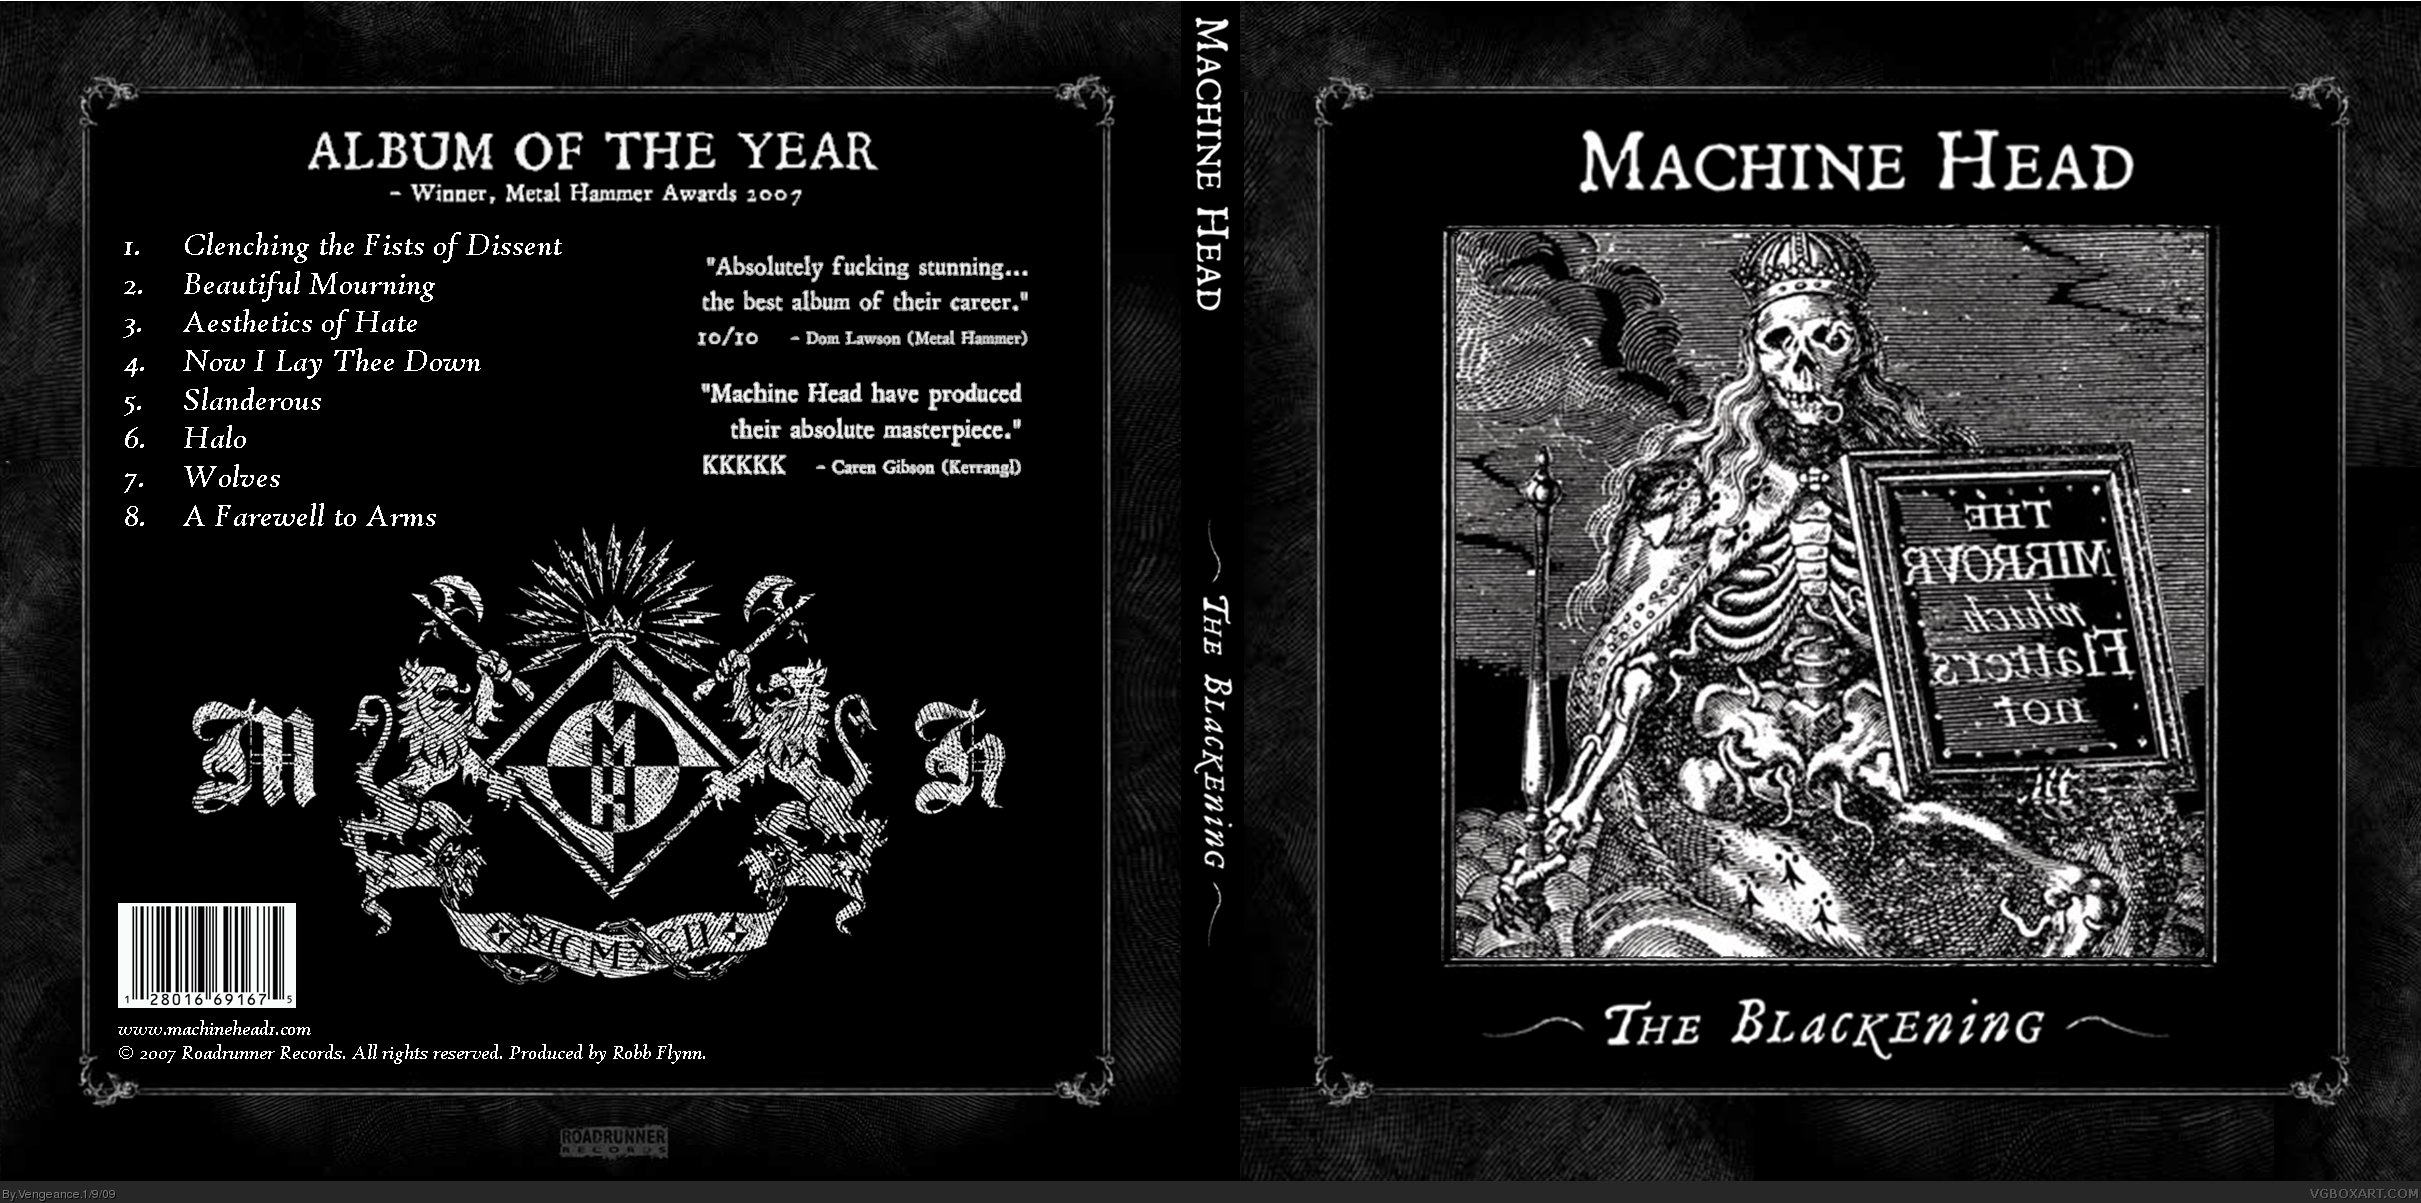 Machine Head - The Blackening box cover